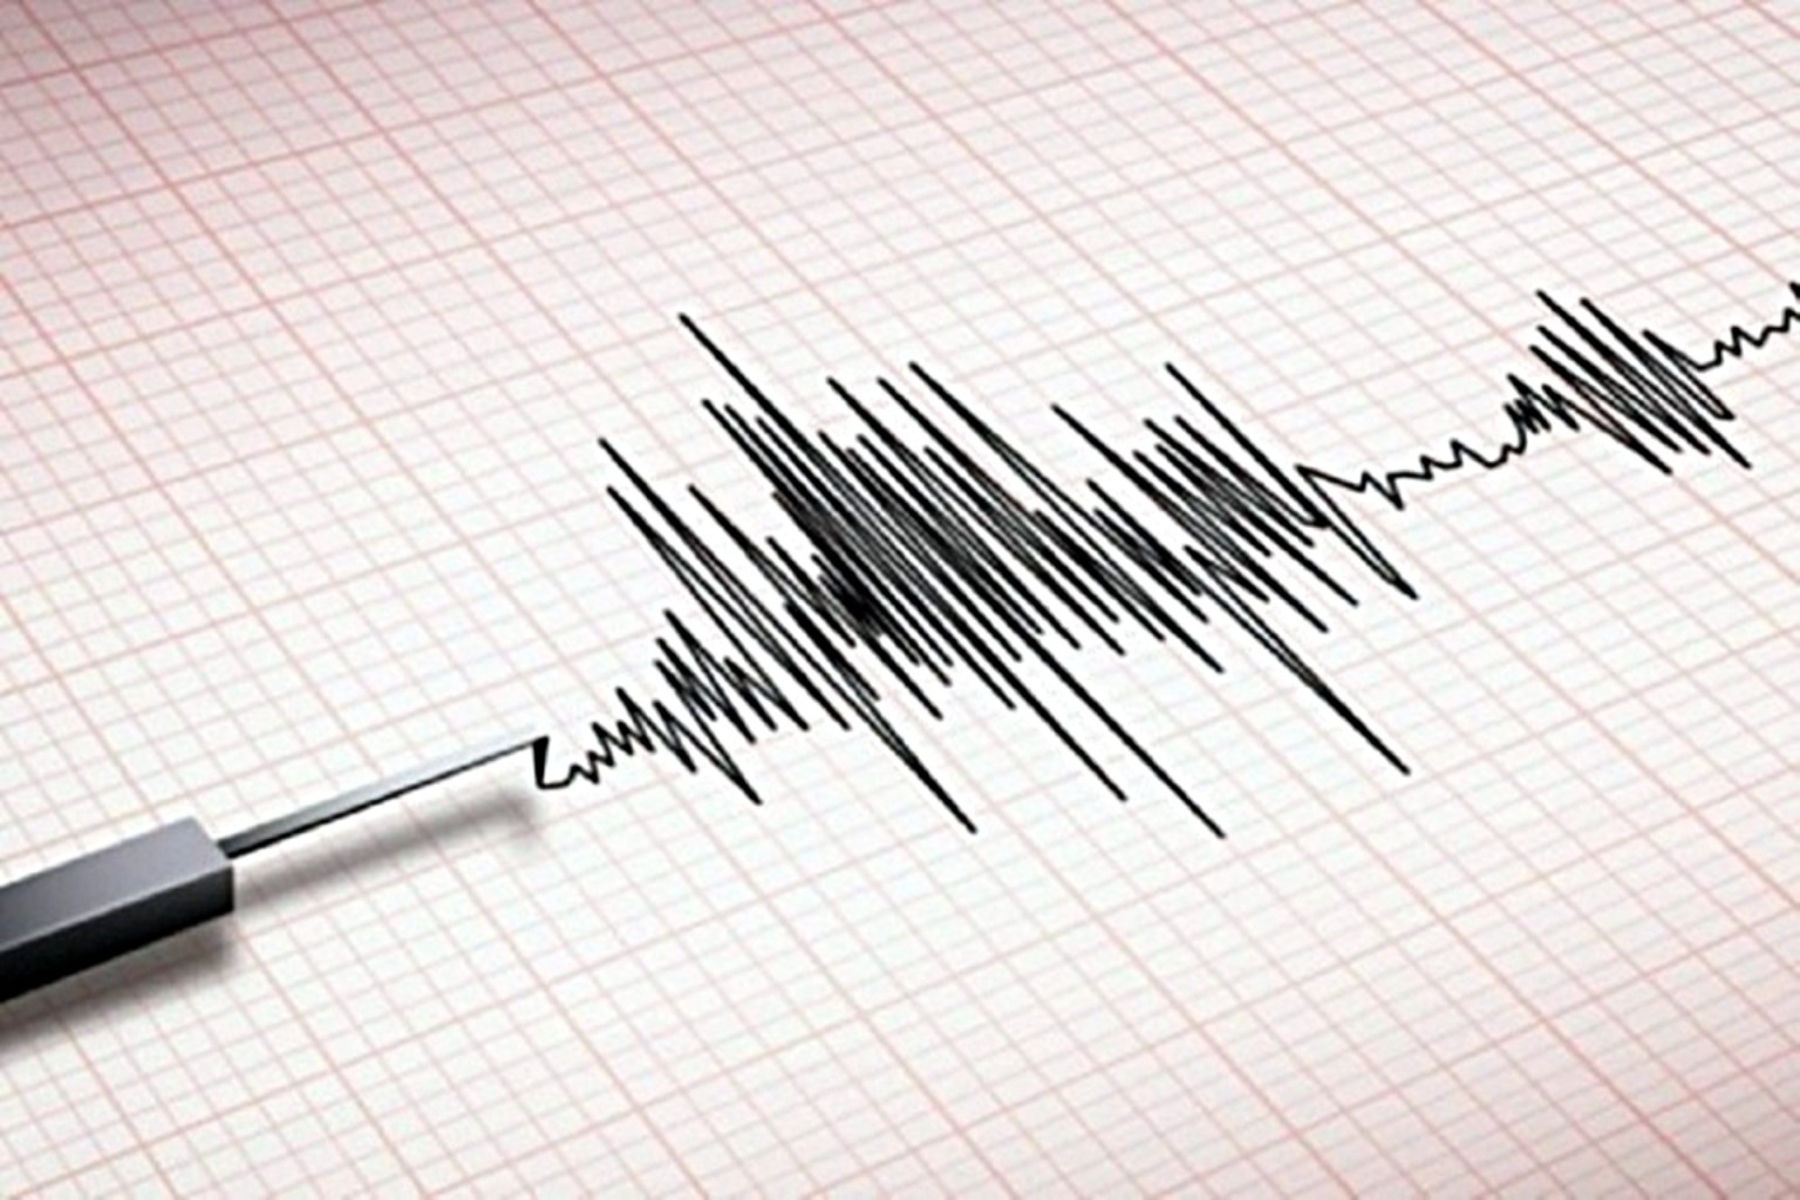 Σεισμός τώρα: Νέα σεισμική δόνηση 4,1 Ρίχτερ στο Γαλαξίδι